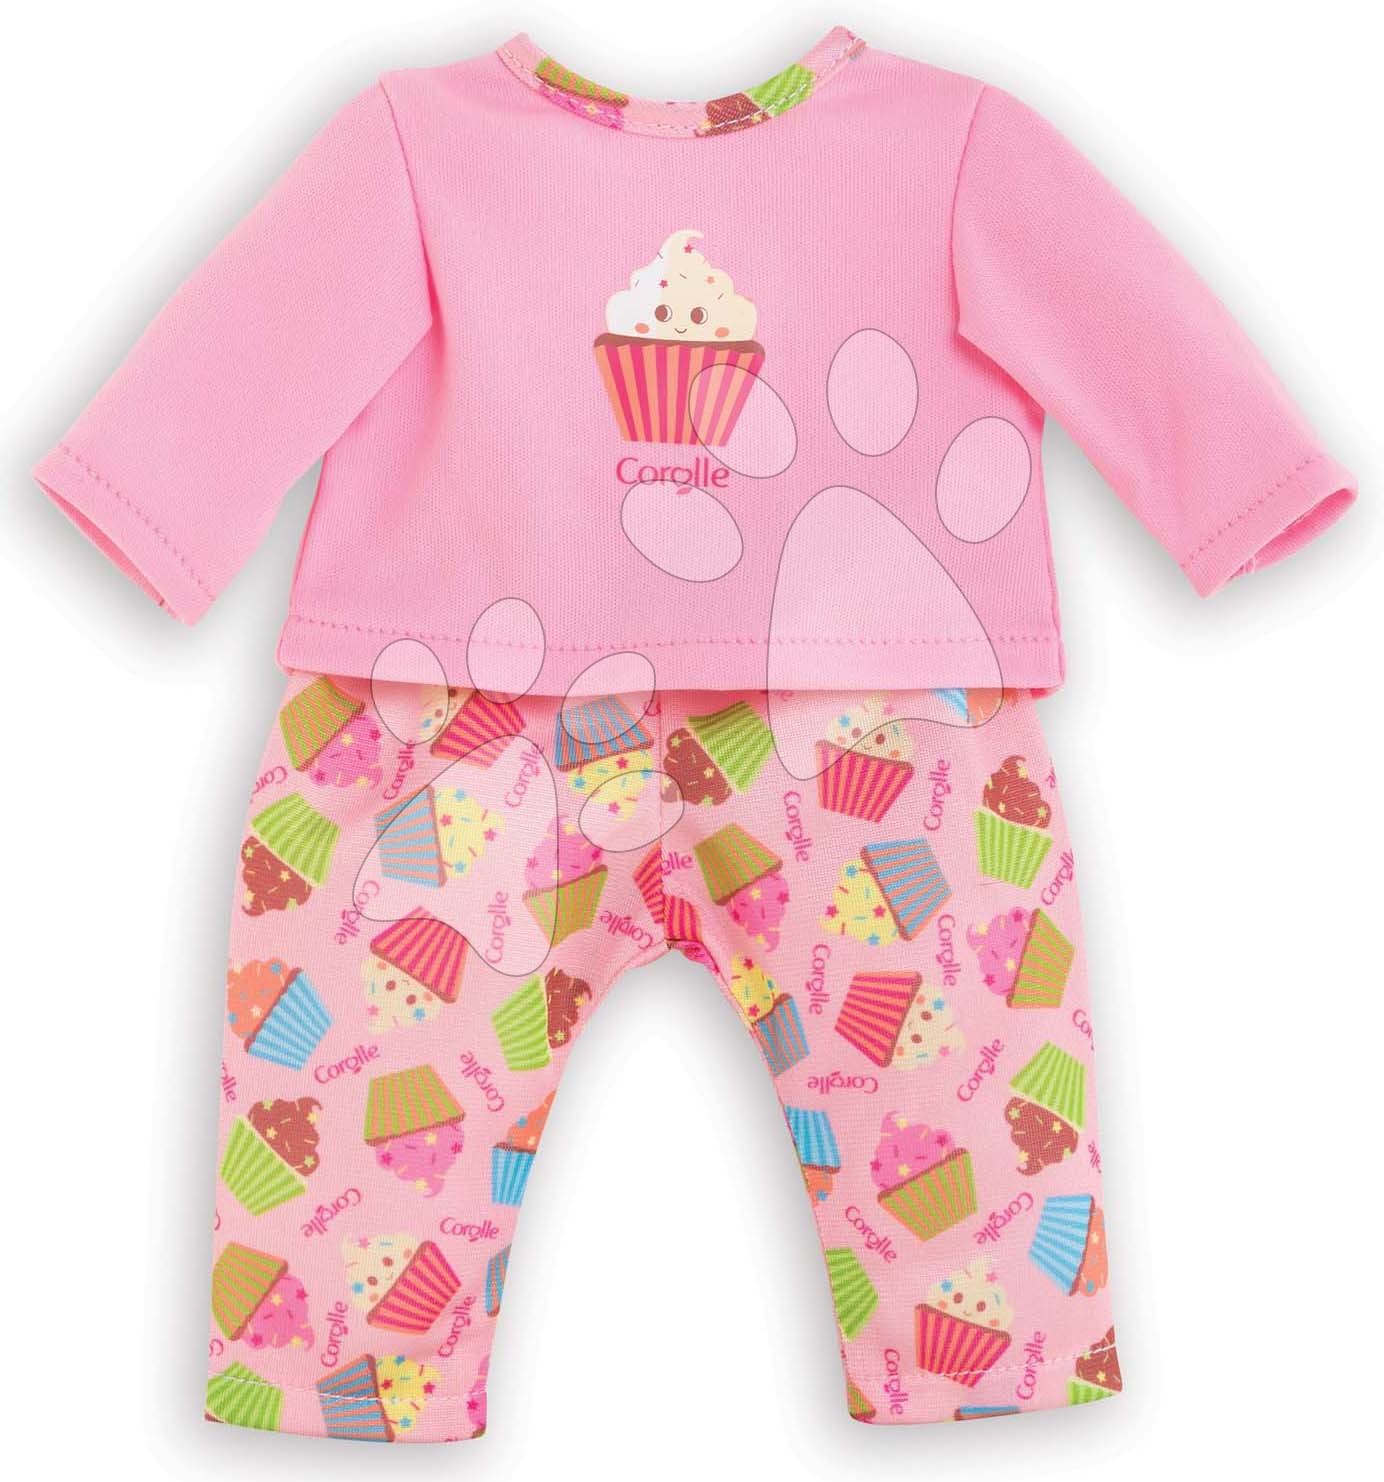 Oblečenie Pajamas Ma Corolle pre 36 cm bábiku od 4 rokov